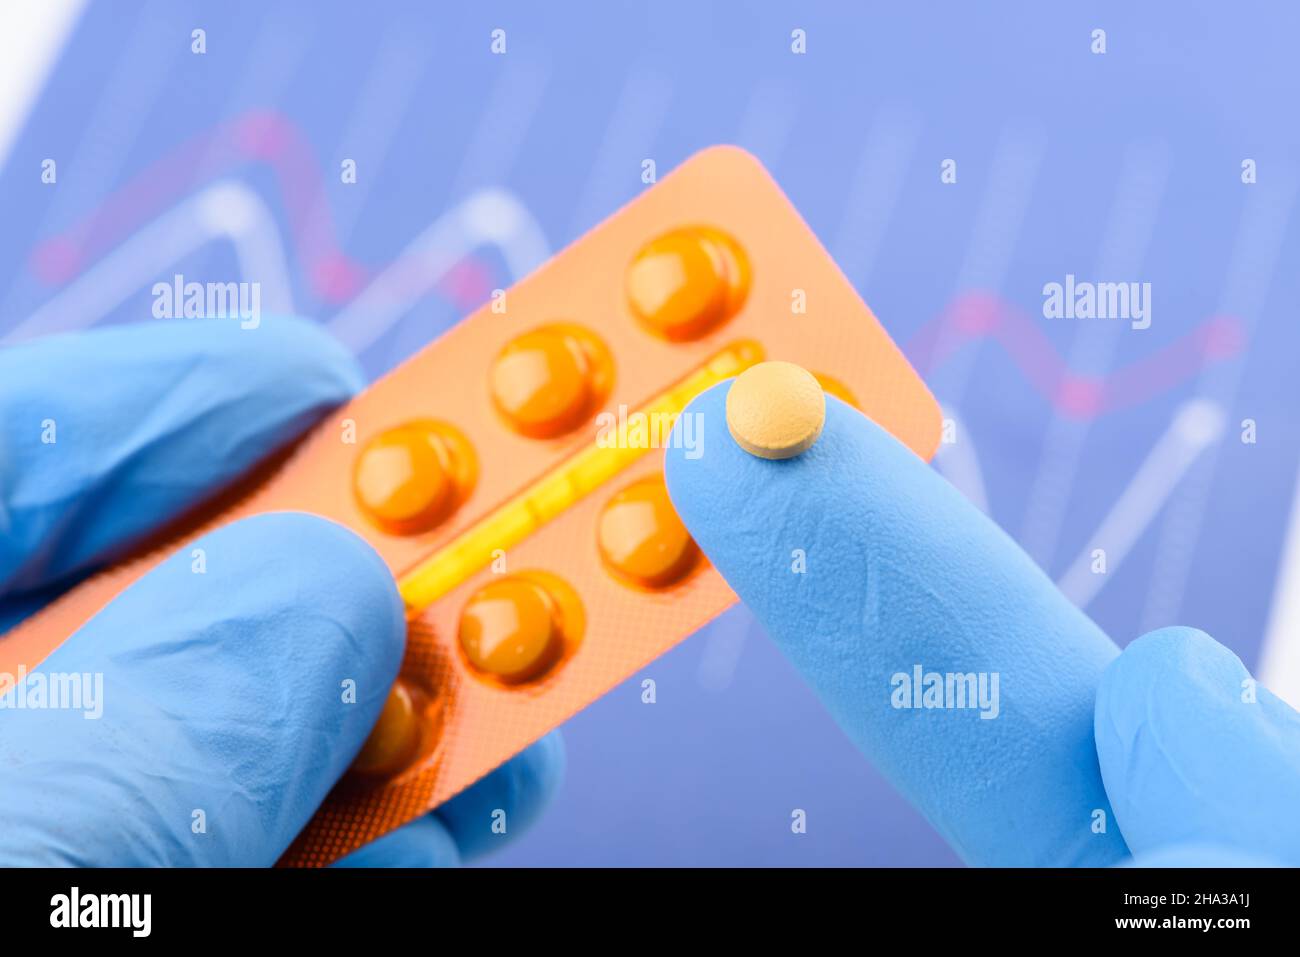 Wissenschaftler halten kleine Pille auf der Fingerspitze einer Hand und Blisterpackung in der anderen. Neue medizinische Behandlung oder Ergänzung der wissenschaftlichen Laborforschung. Stockfoto